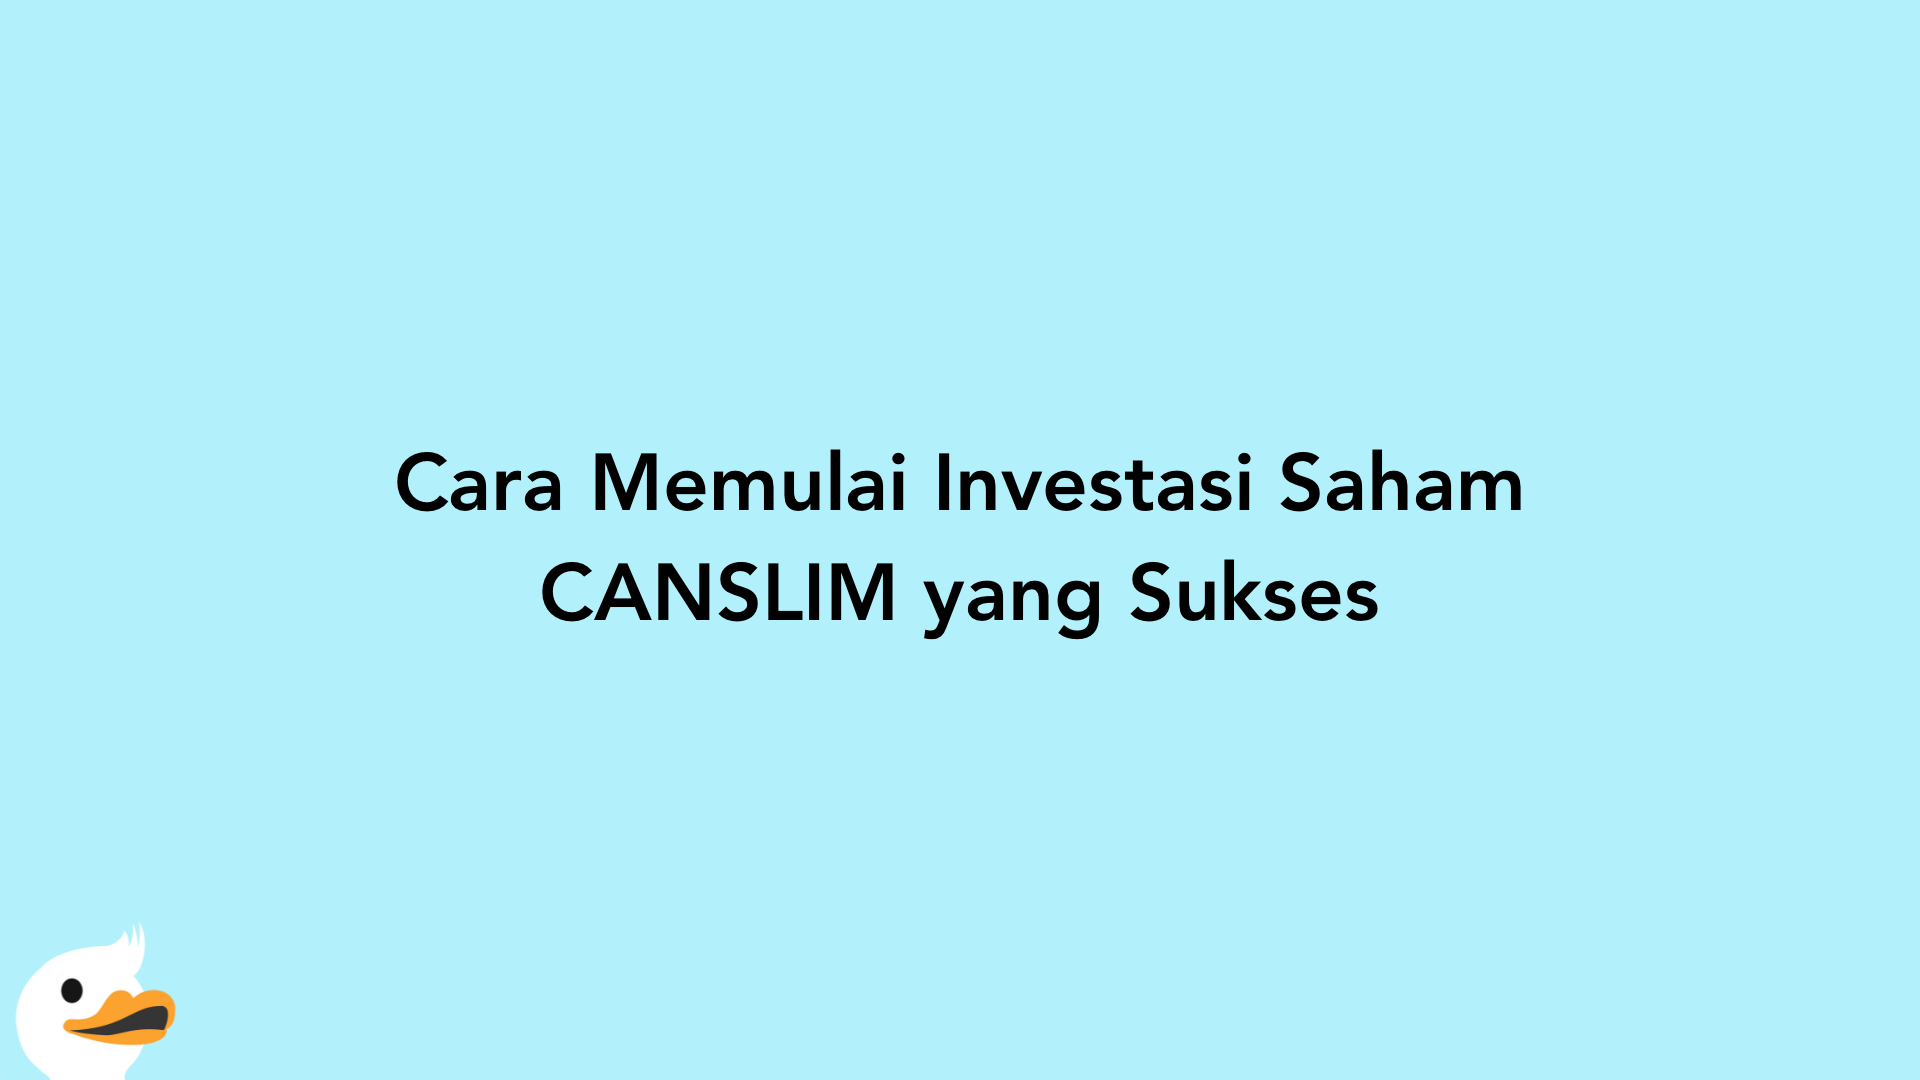 Cara Memulai Investasi Saham CANSLIM yang Sukses